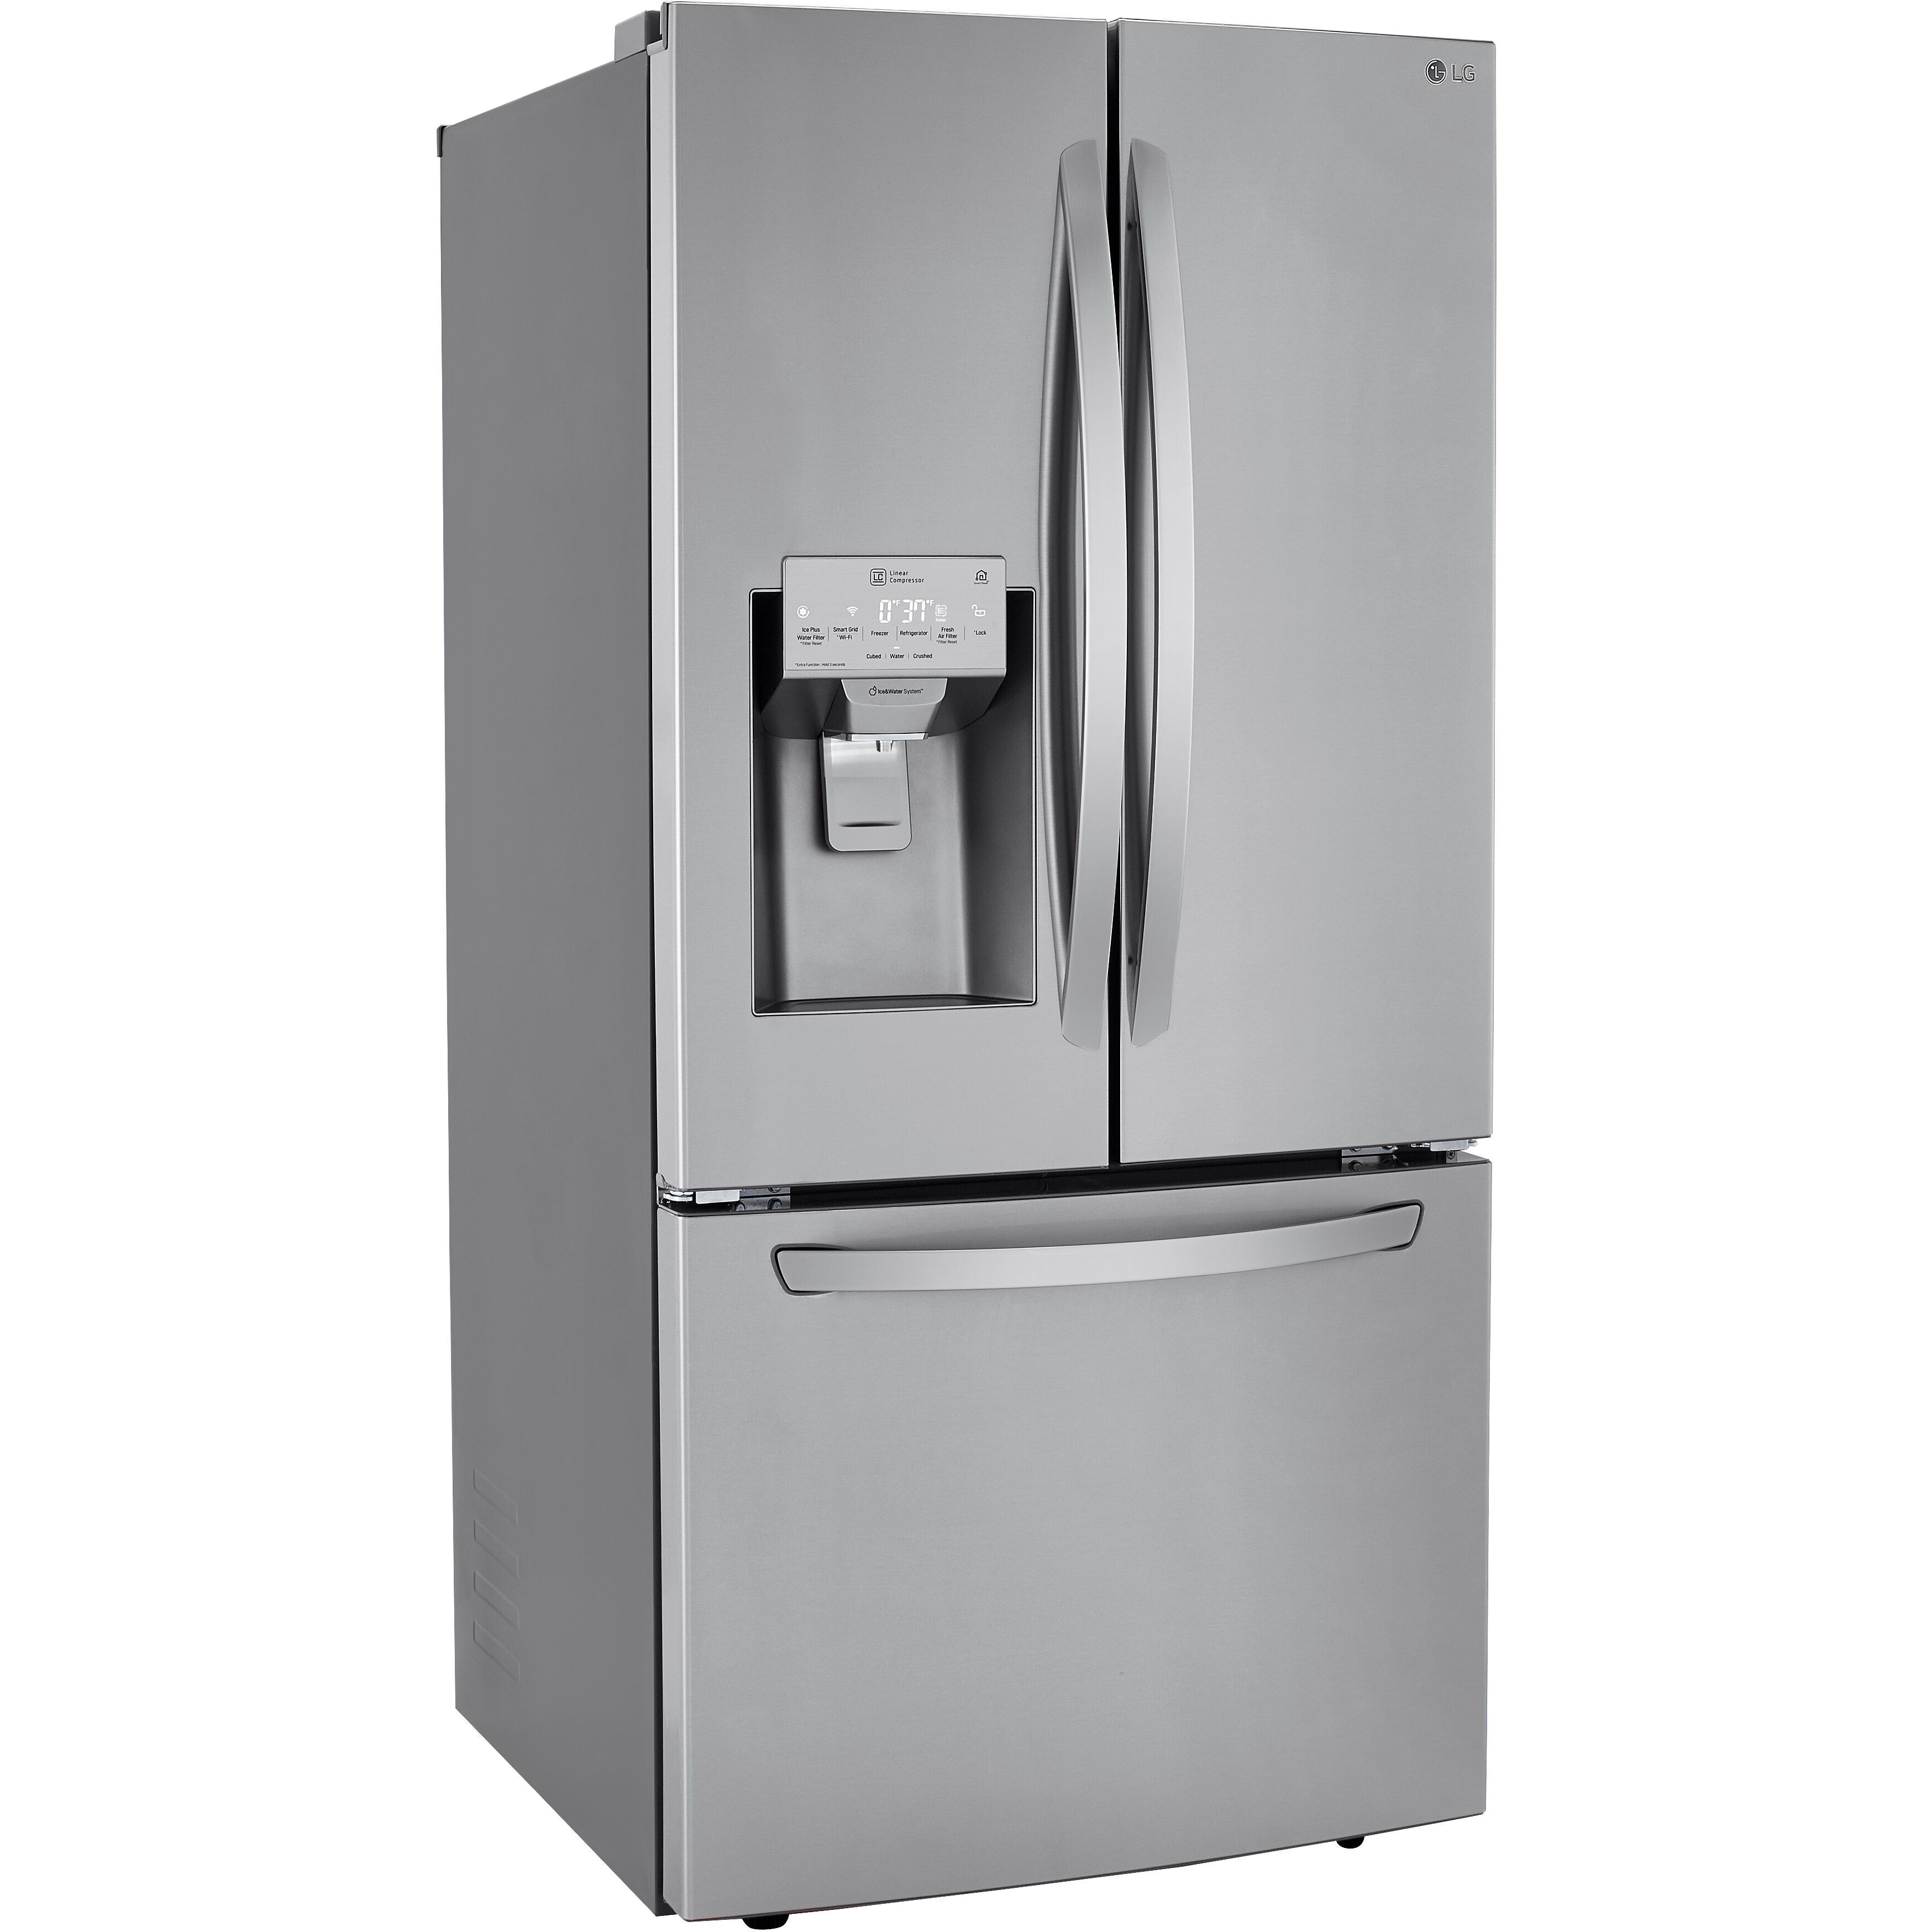 LG 33 Inch 3-Door French Door Refrigerator in Stainless Steel 25 Cu. Ft. (LRFXS2503S)